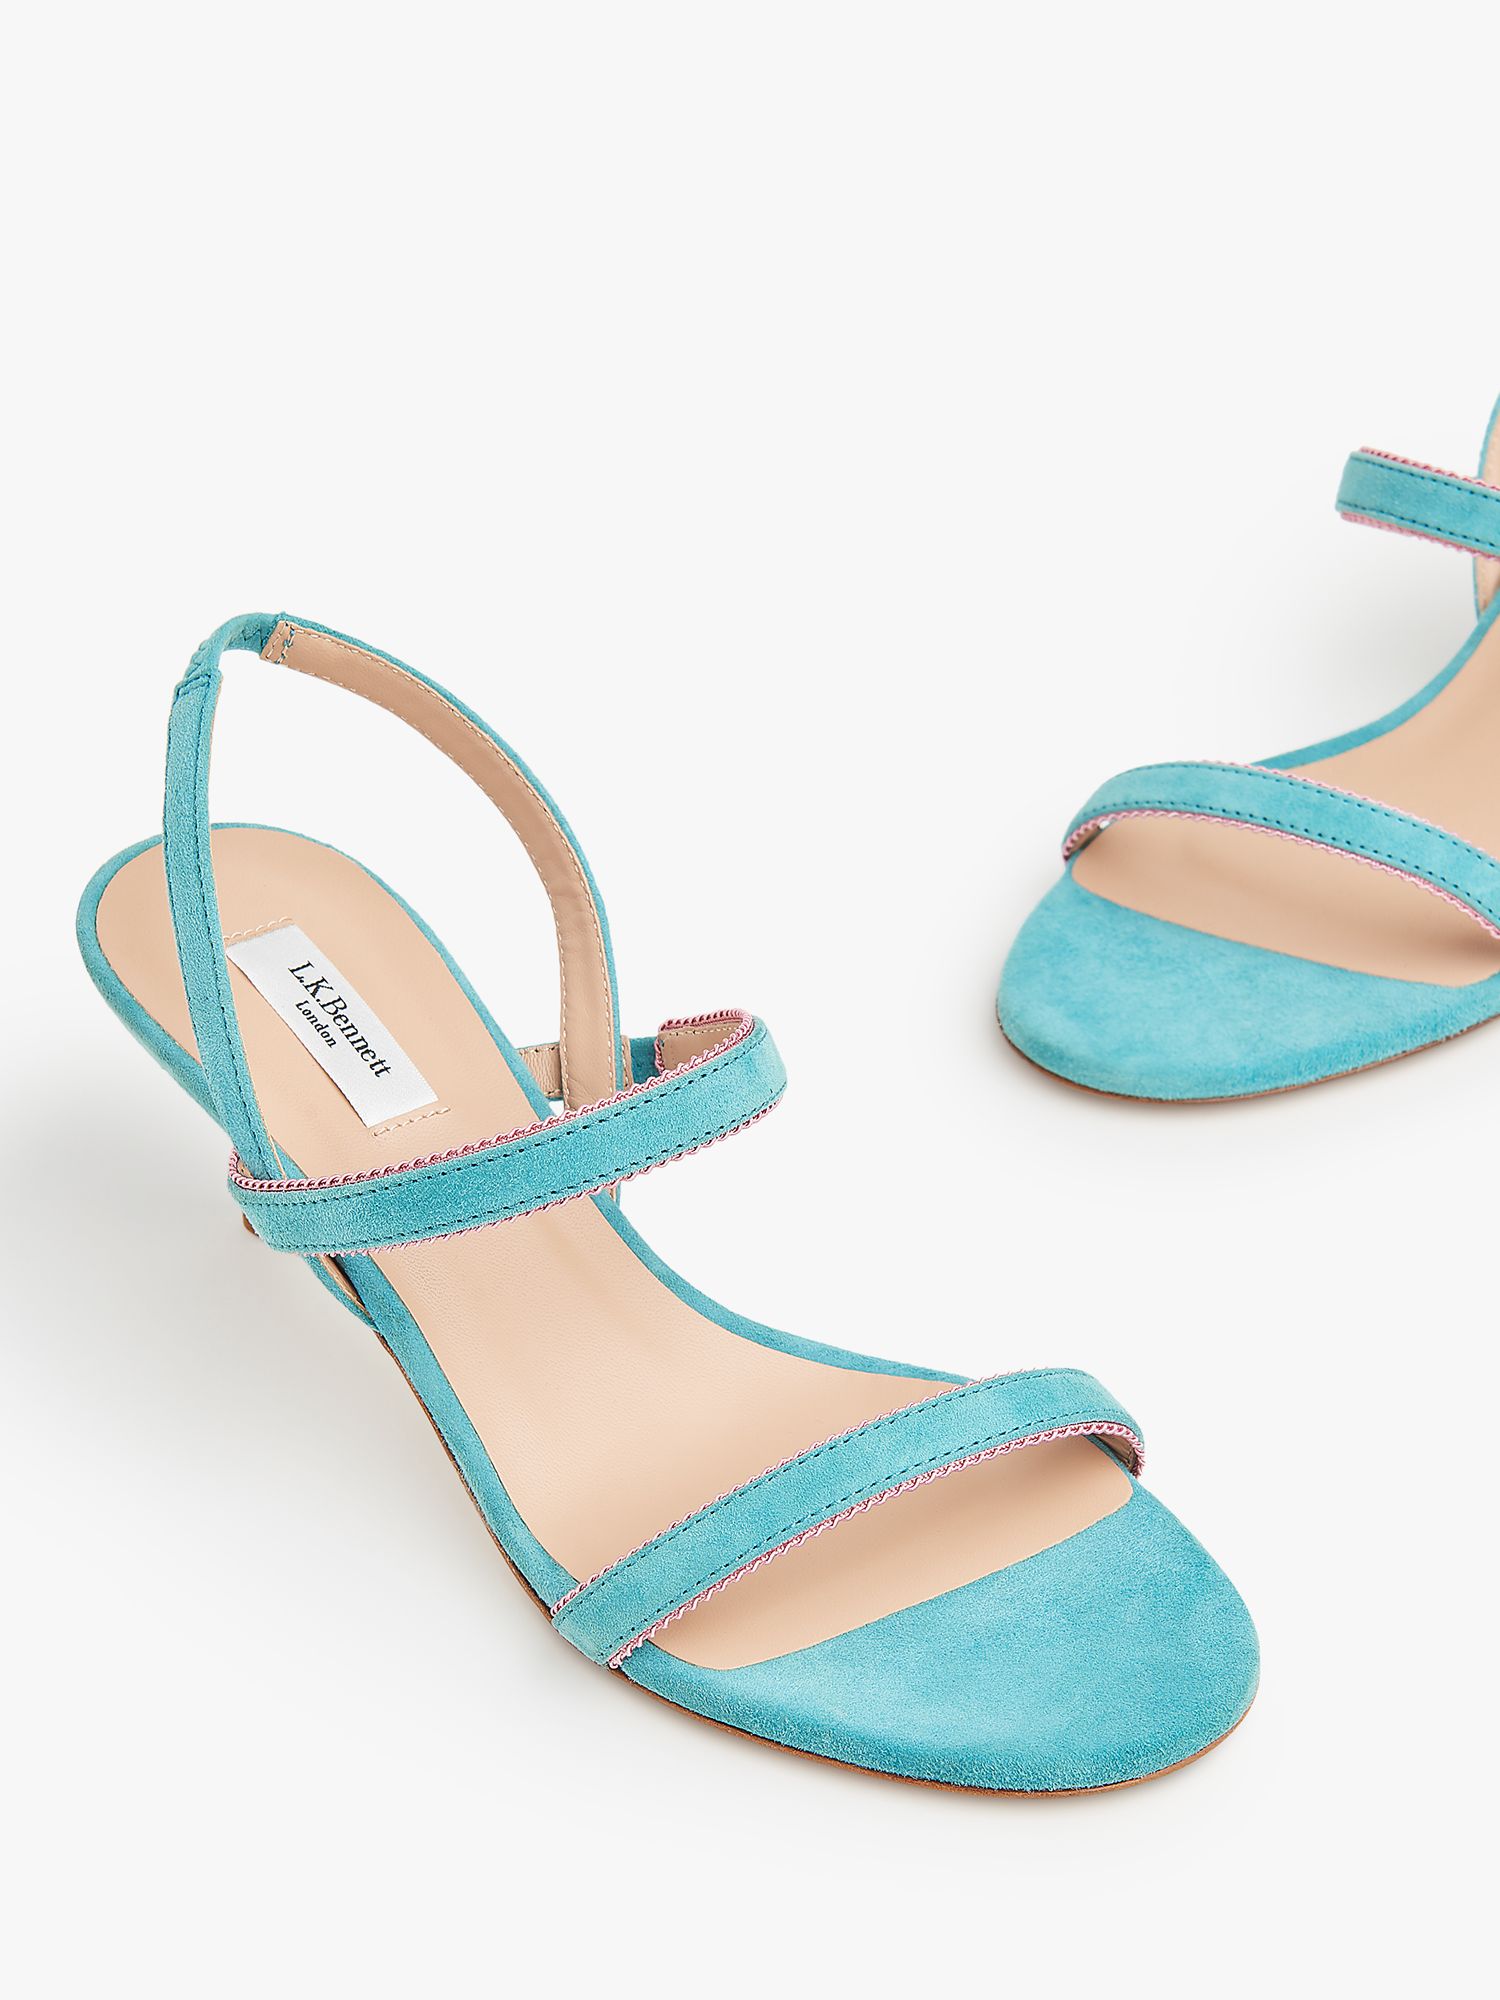 L.K.Bennett Nala Suede Sandals, Light Blue